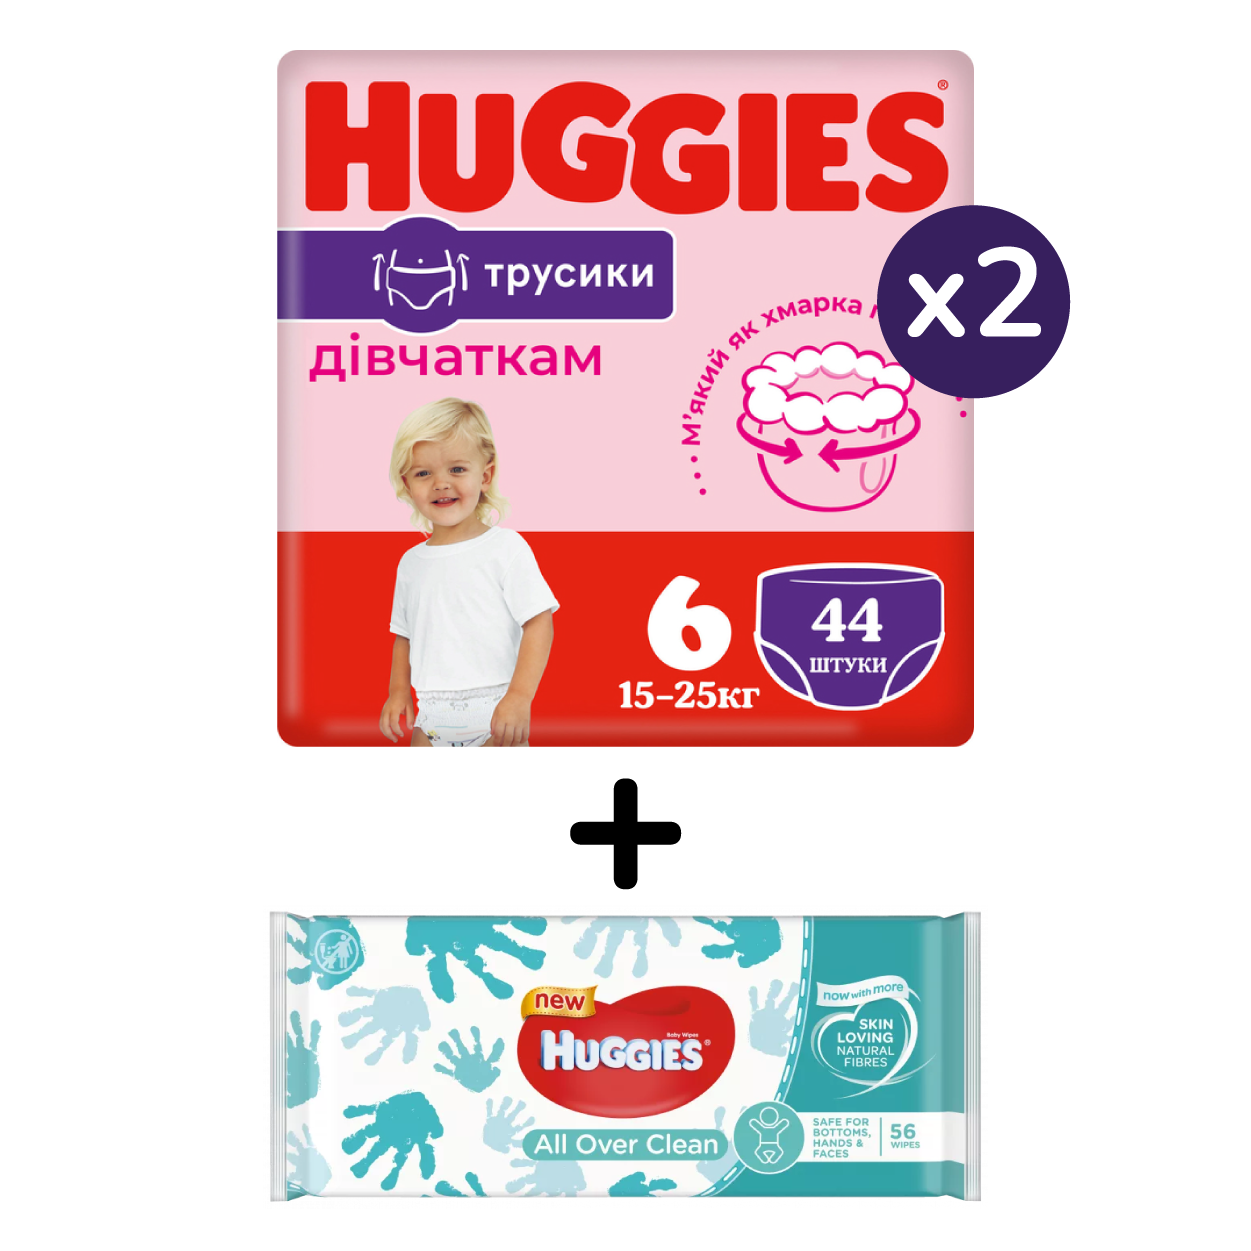 Набор Huggies: Подгузники-трусики для девочек Huggies Pants 6 (15-25 кг), 88 шт. (2 упаковки по 44 шт.) + Влажные салфетки Huggies All Over Clean, 56 шт. - фото 1